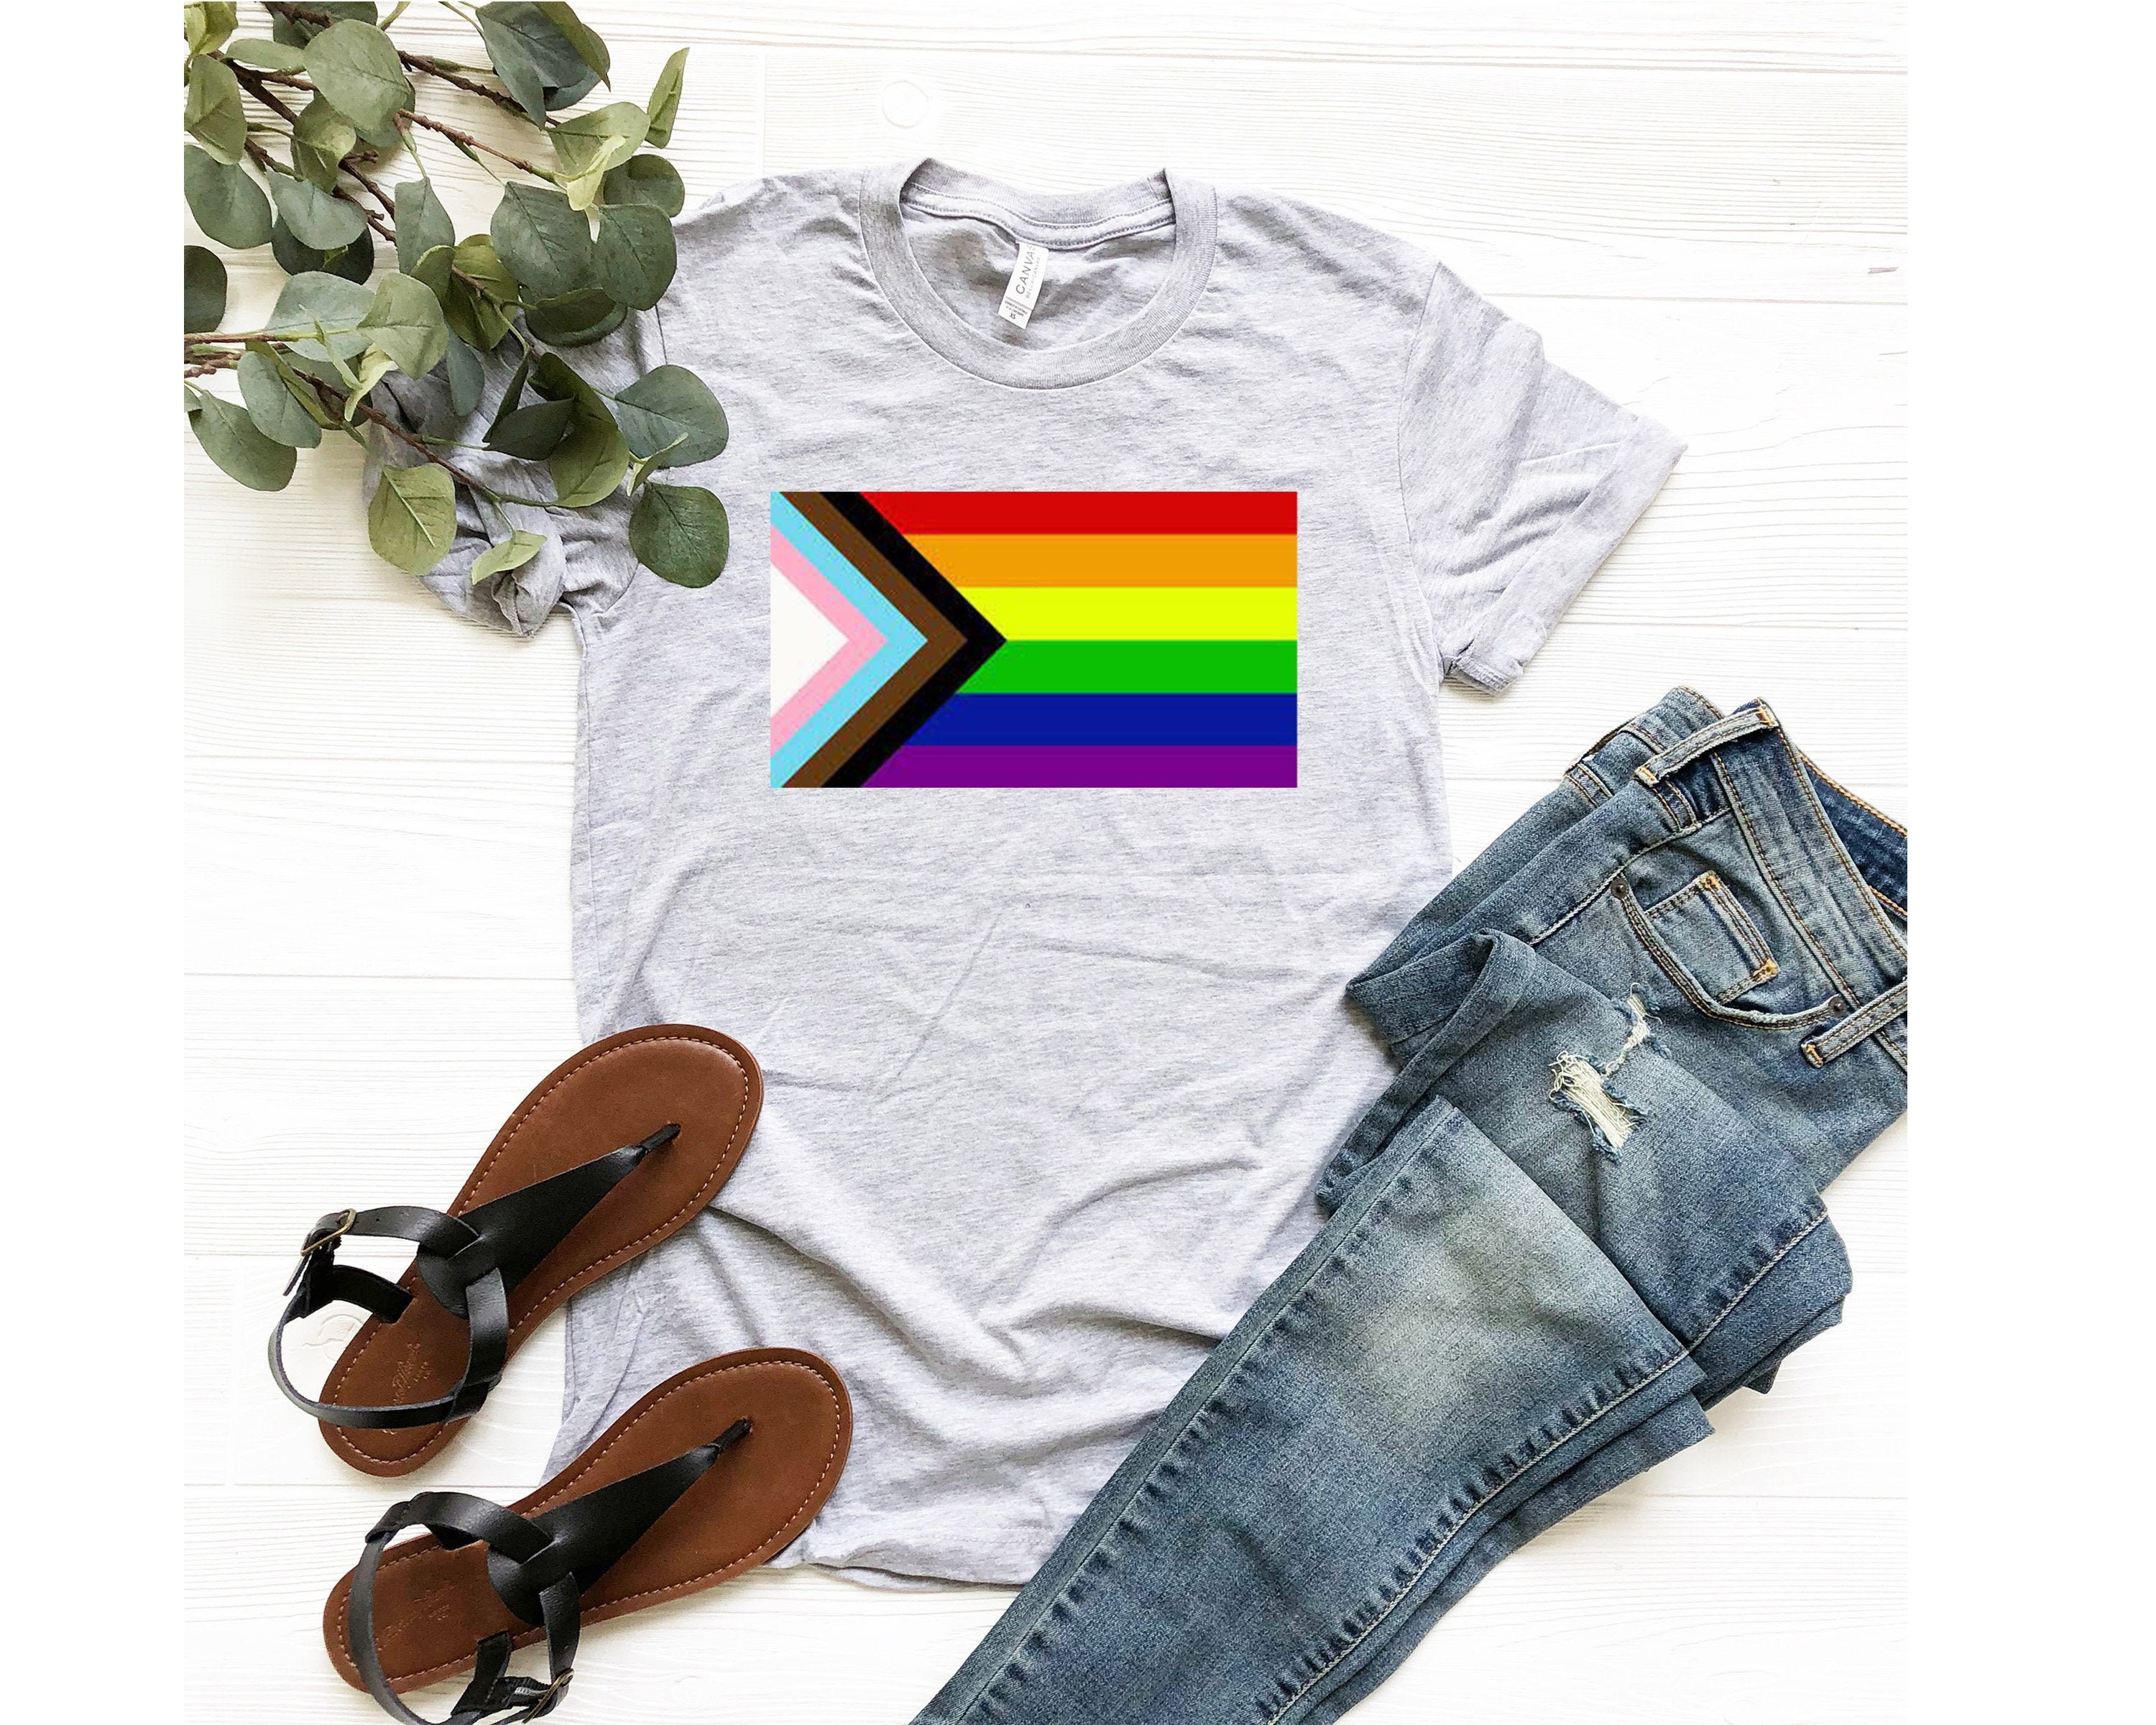 Trans Pride Clothing | TシャツLGBTゲイナイツプライドフェチトムオブフィンランドcsd 